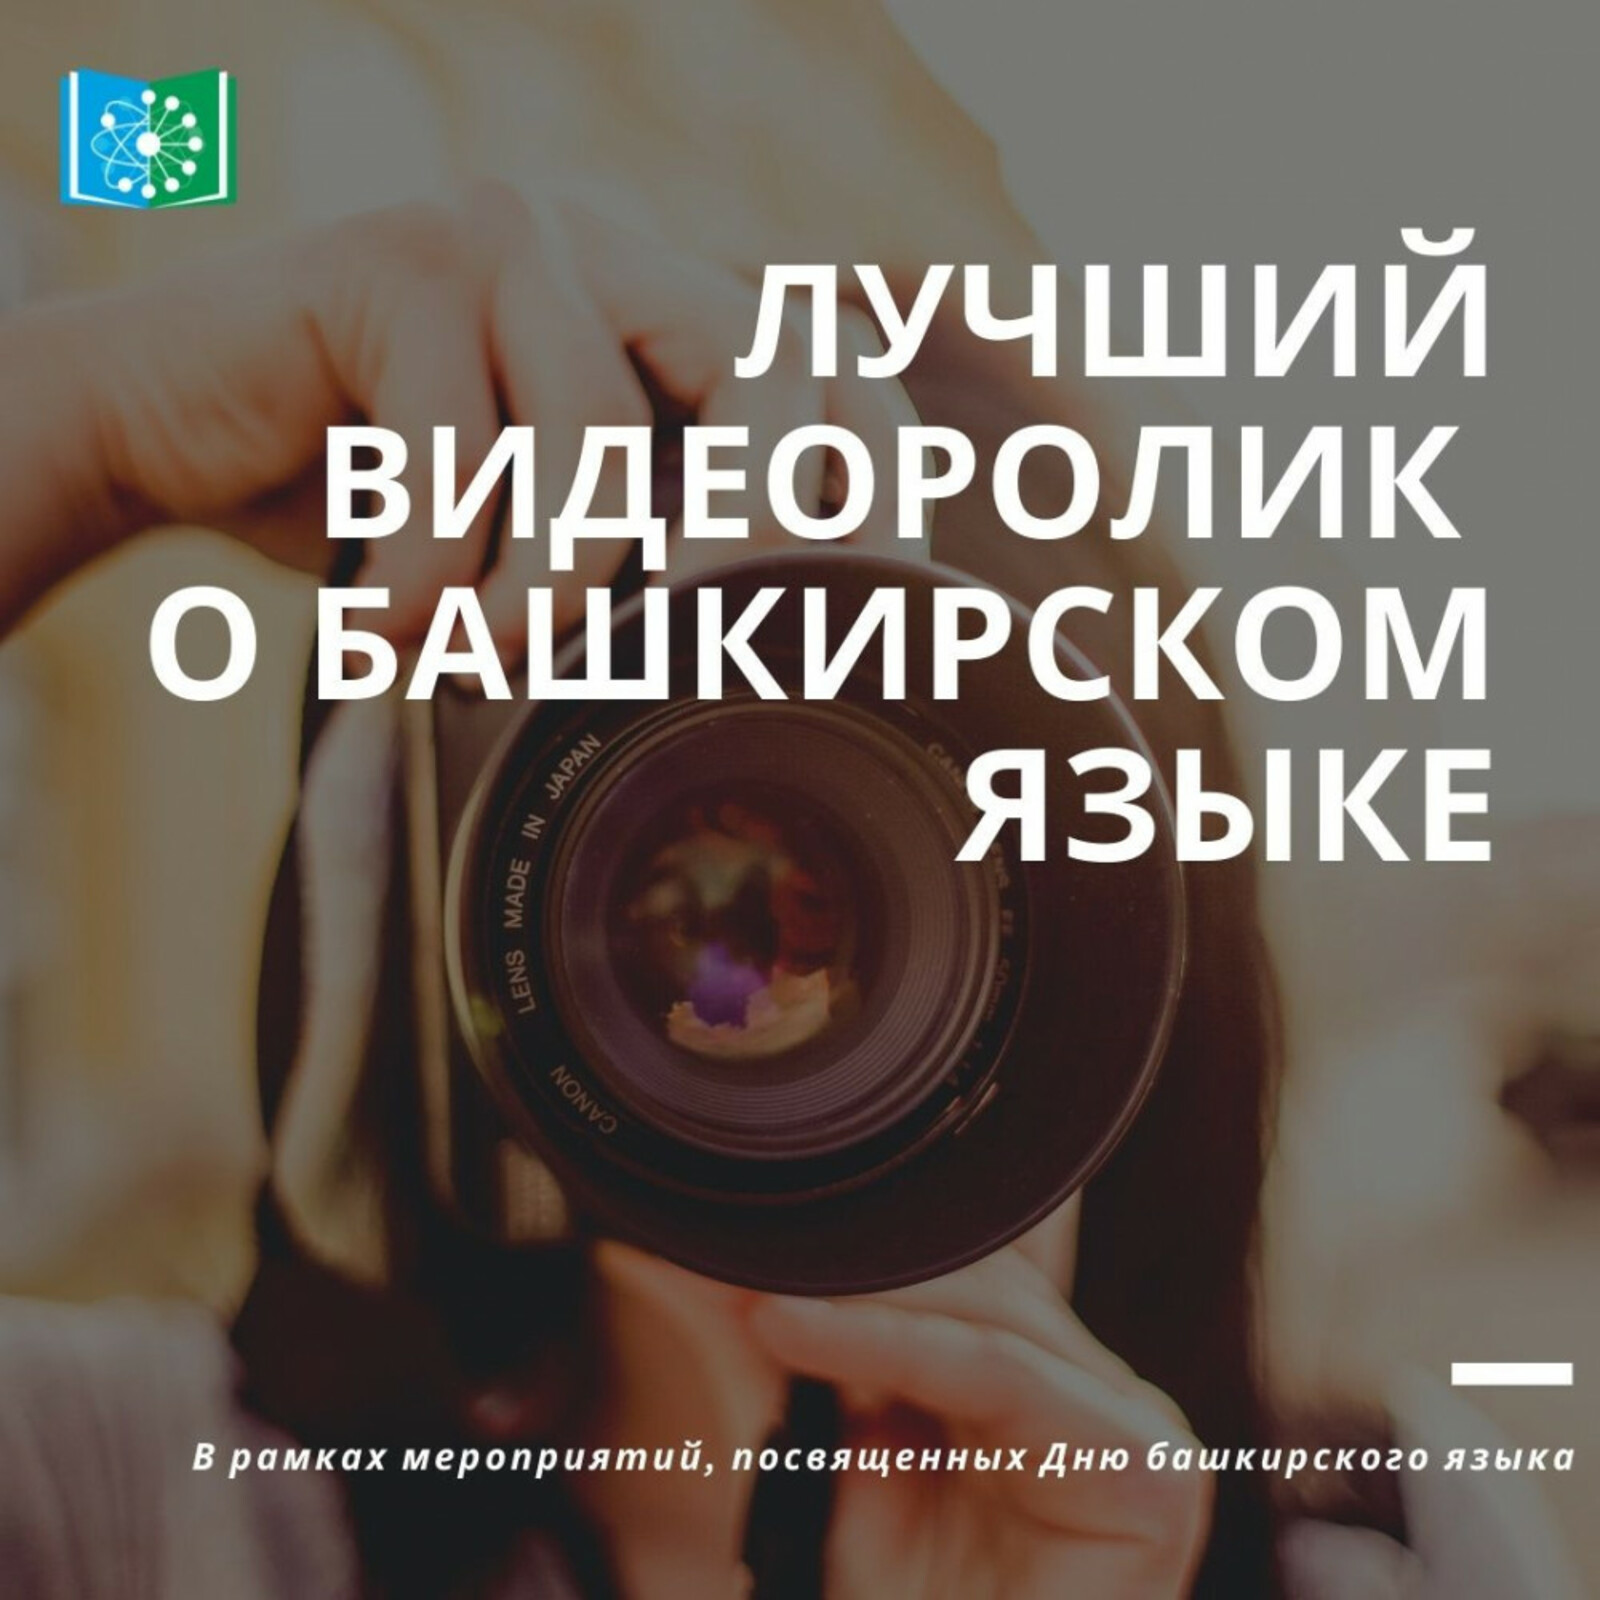 В Башкортостане стартует конкурс на лучший видеоролик о башкирском языке